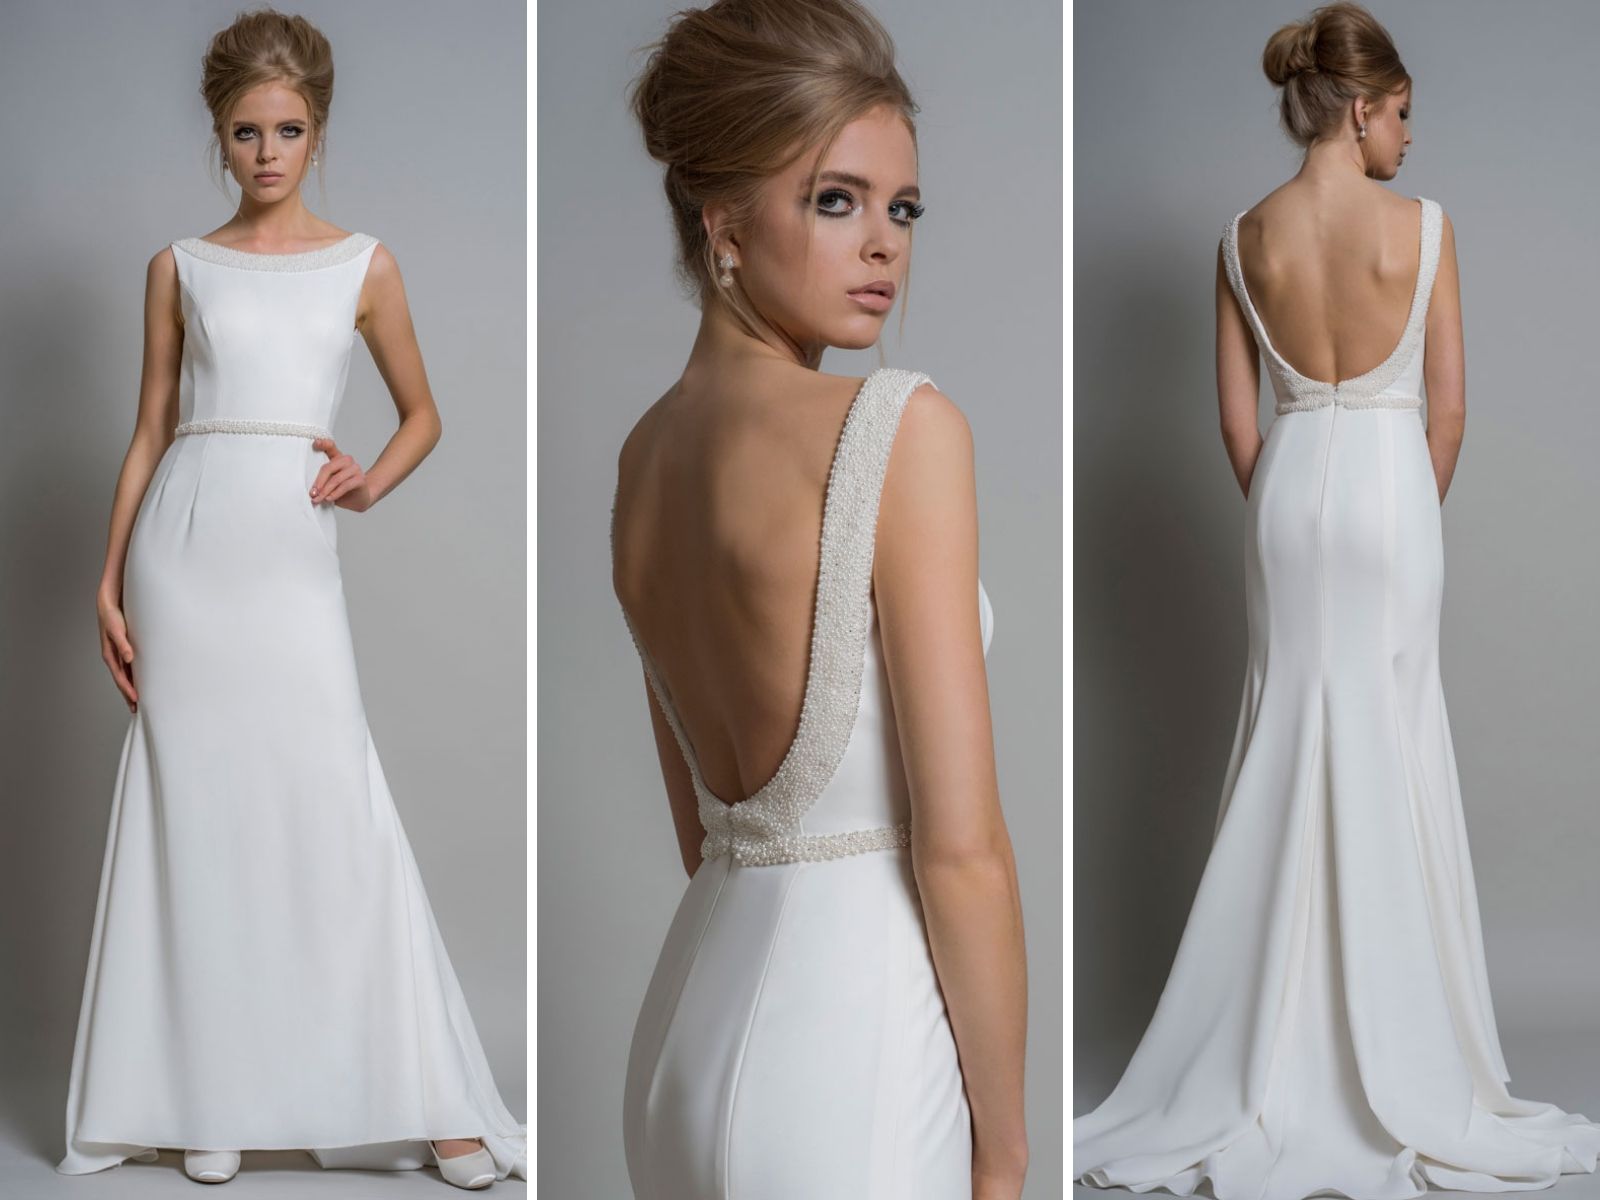 FigureFlattering Wedding Dresses for Your Body Shape